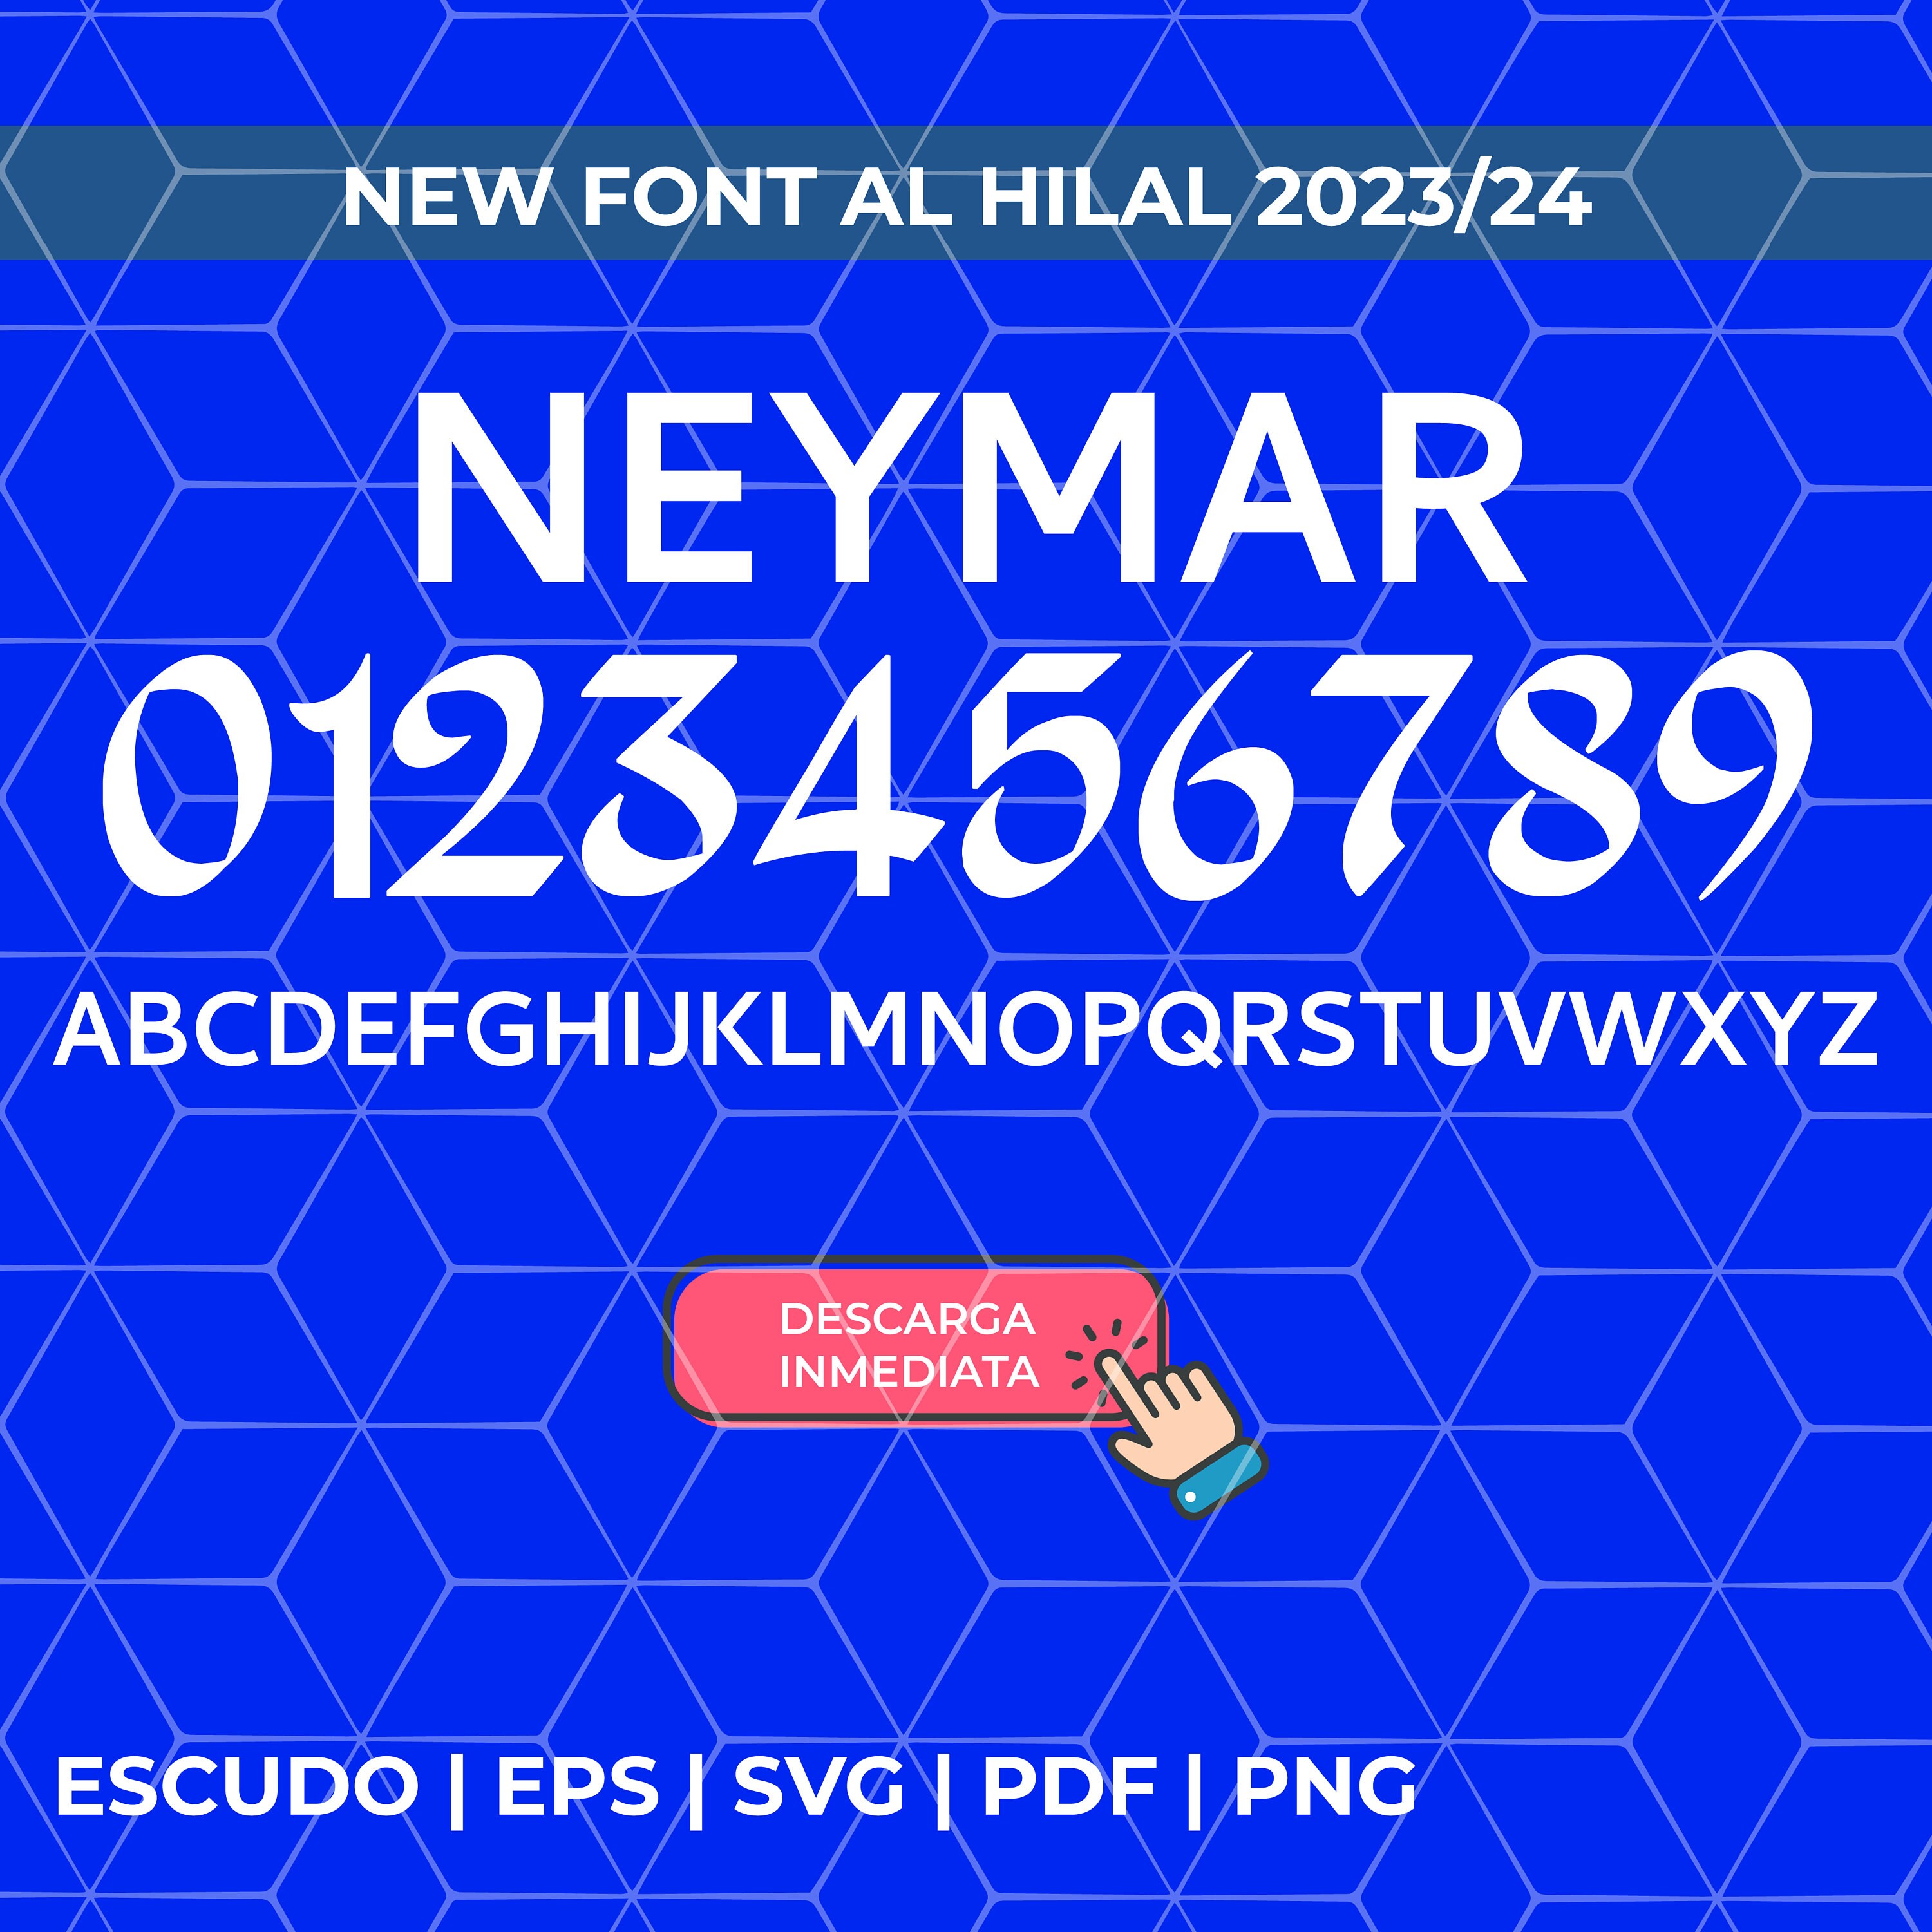 Camiseta Al Hilal - Neymar 10 Local – TuCamiseta10